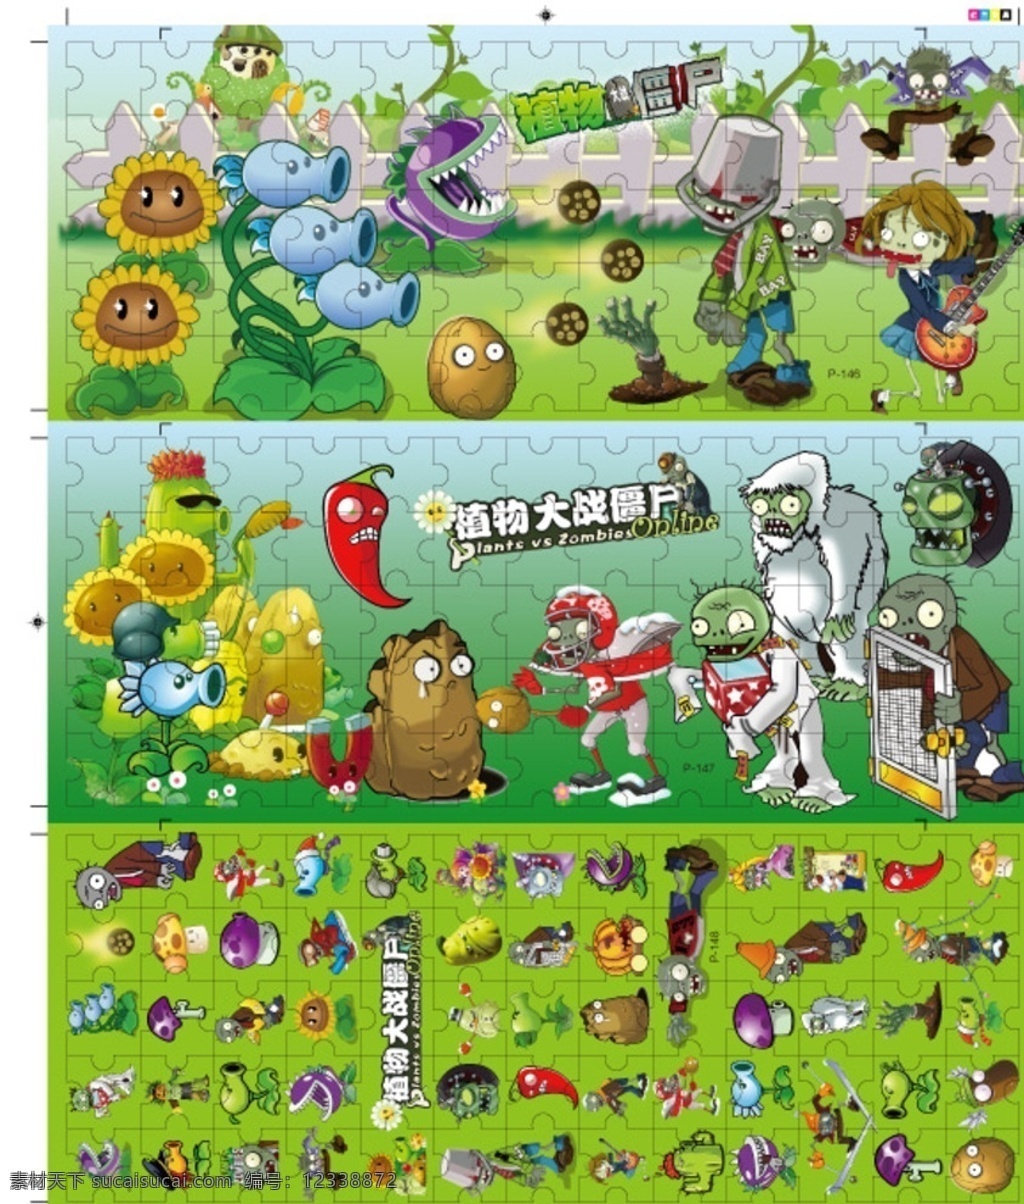 植物大战僵尸 卡通形象 可爱 游戏人物 拼卡图 动漫动画 动漫人物